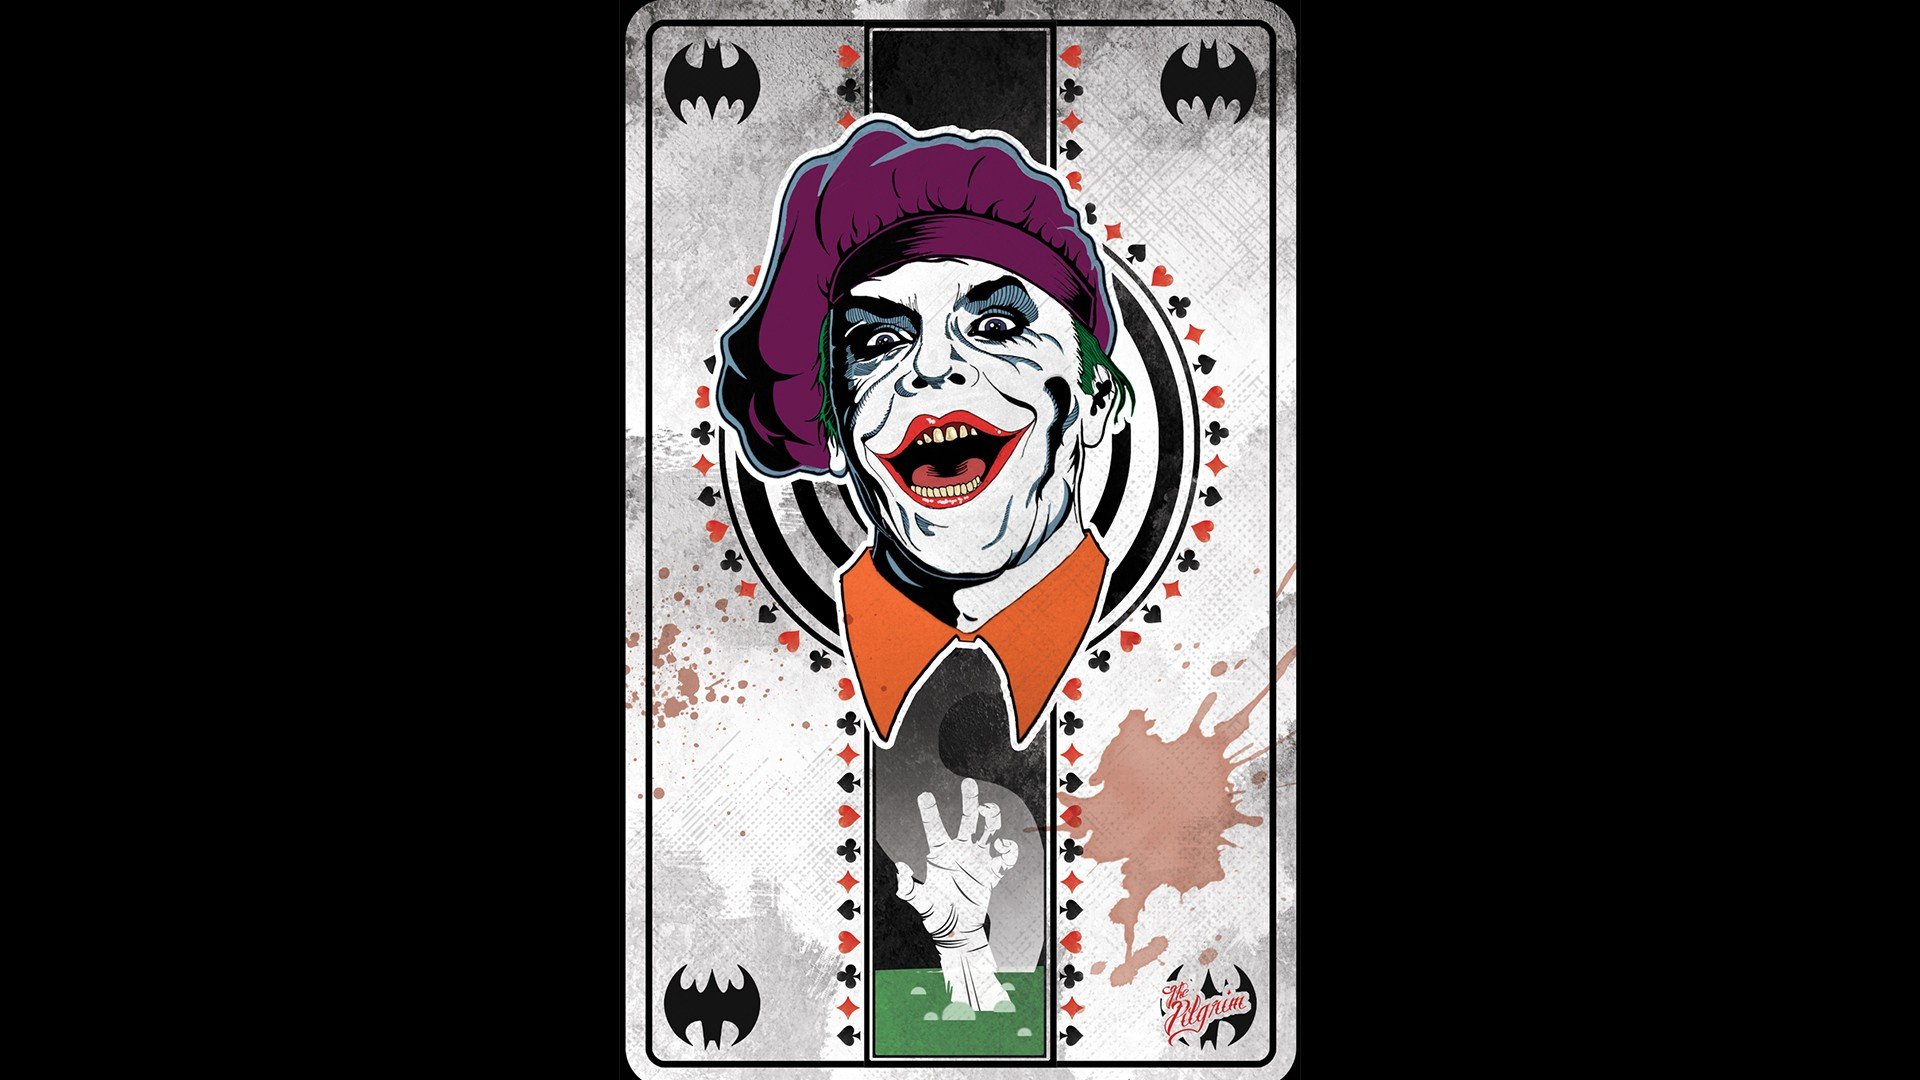 Joker Movie Hd Wallpaper For Mobile